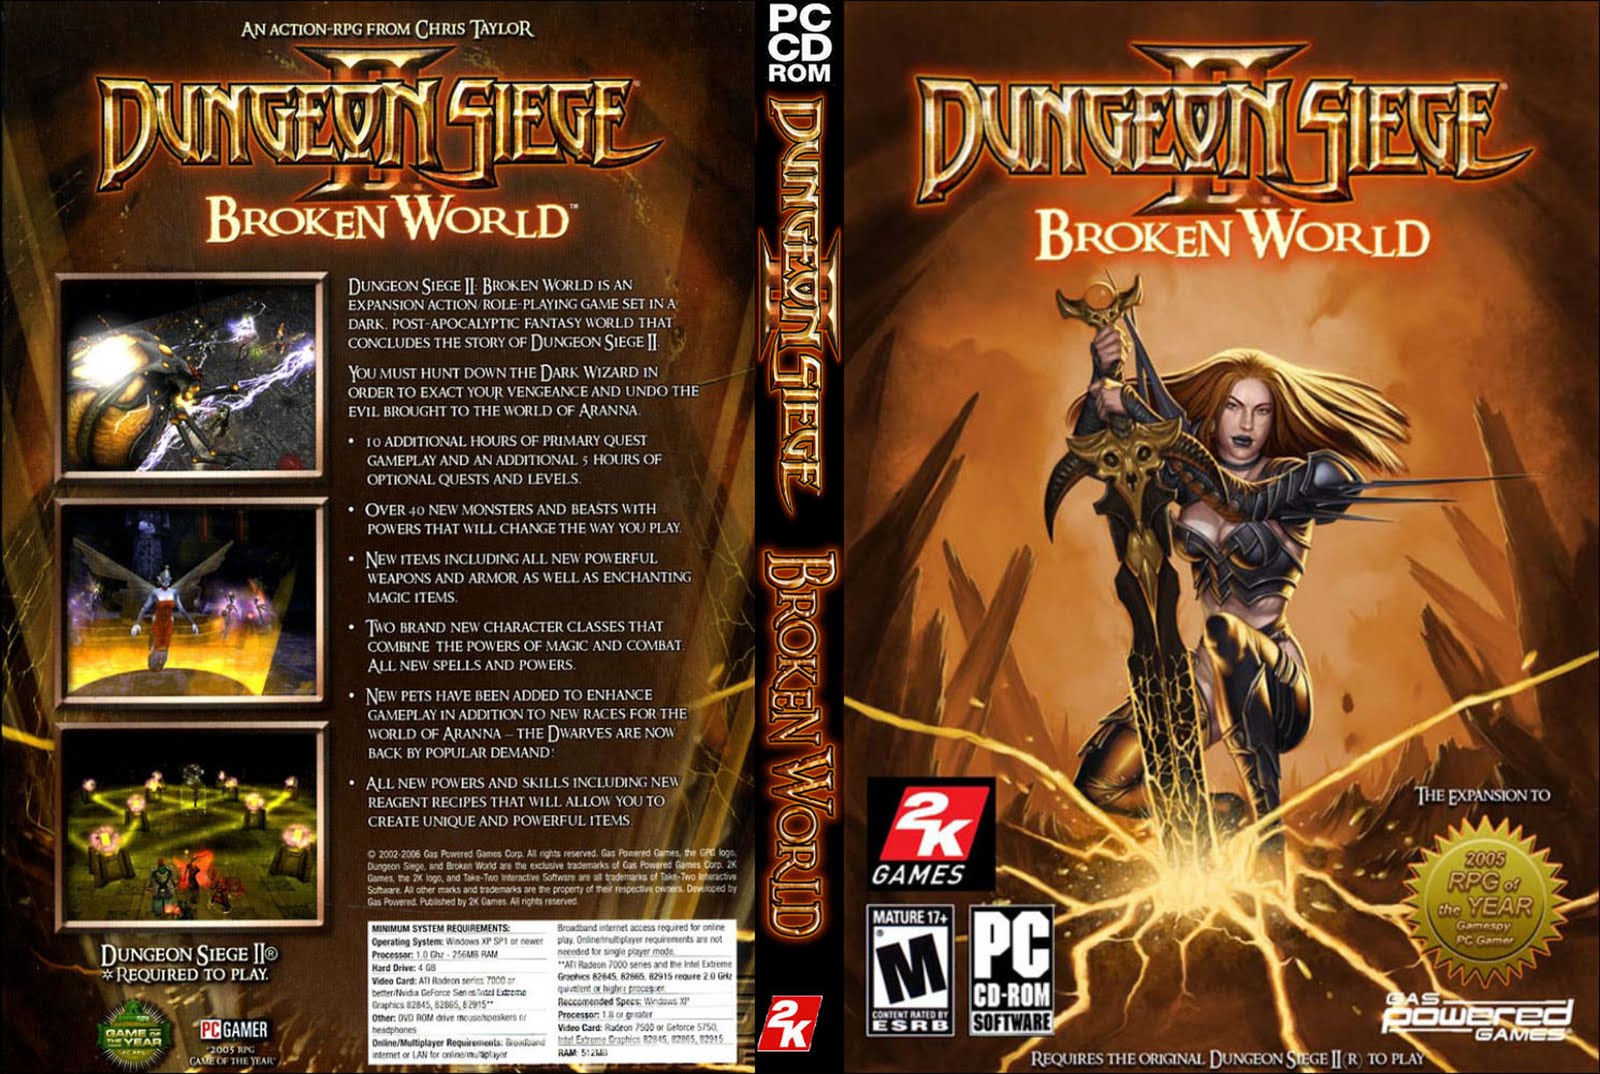 Dungeon siege broken world